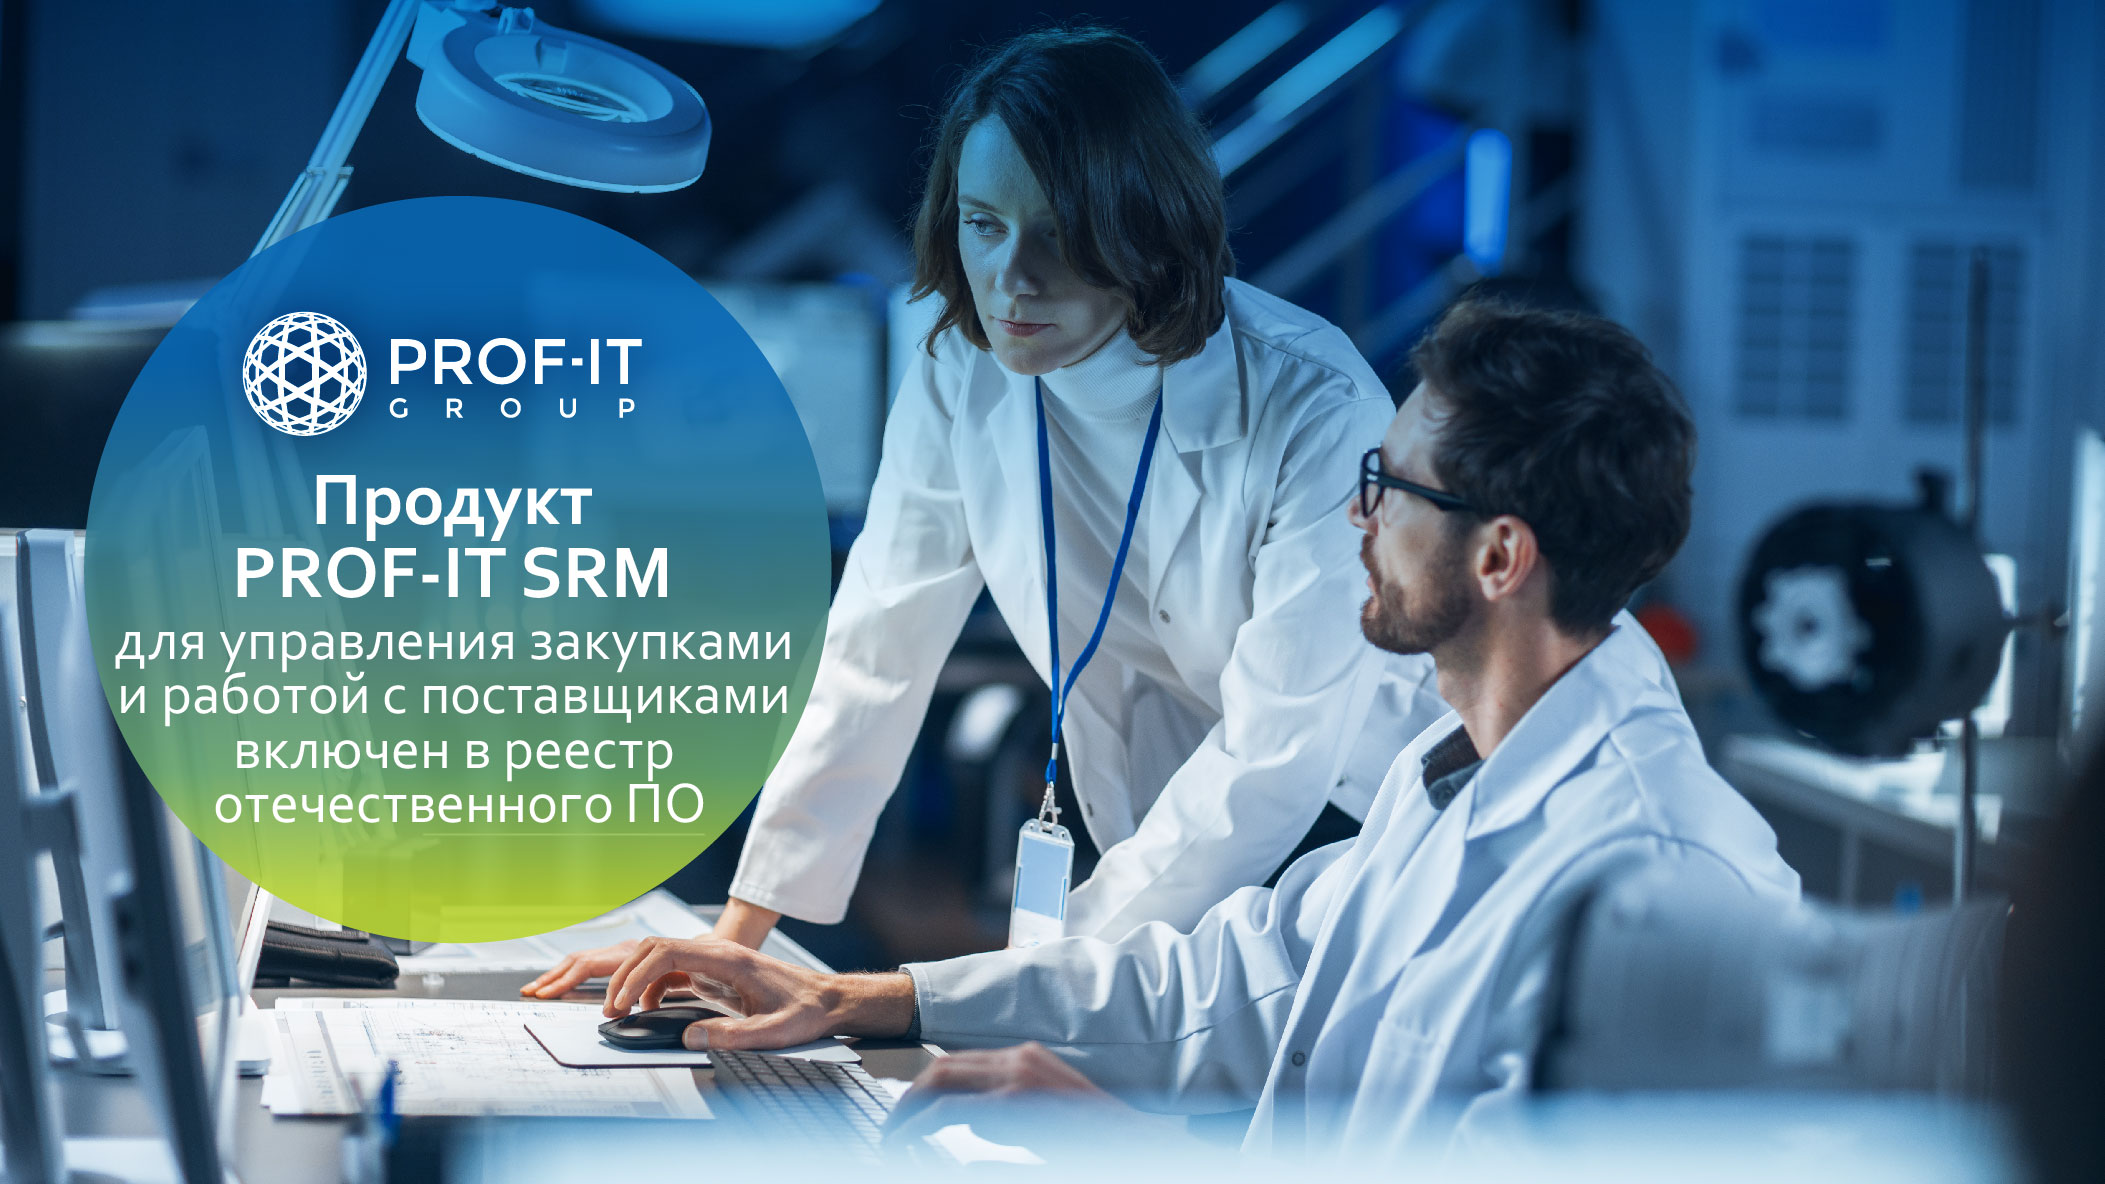 Решение PROF-IT SRM для управления закупками и работой с поставщиками включено в Единый реестр российского ПО